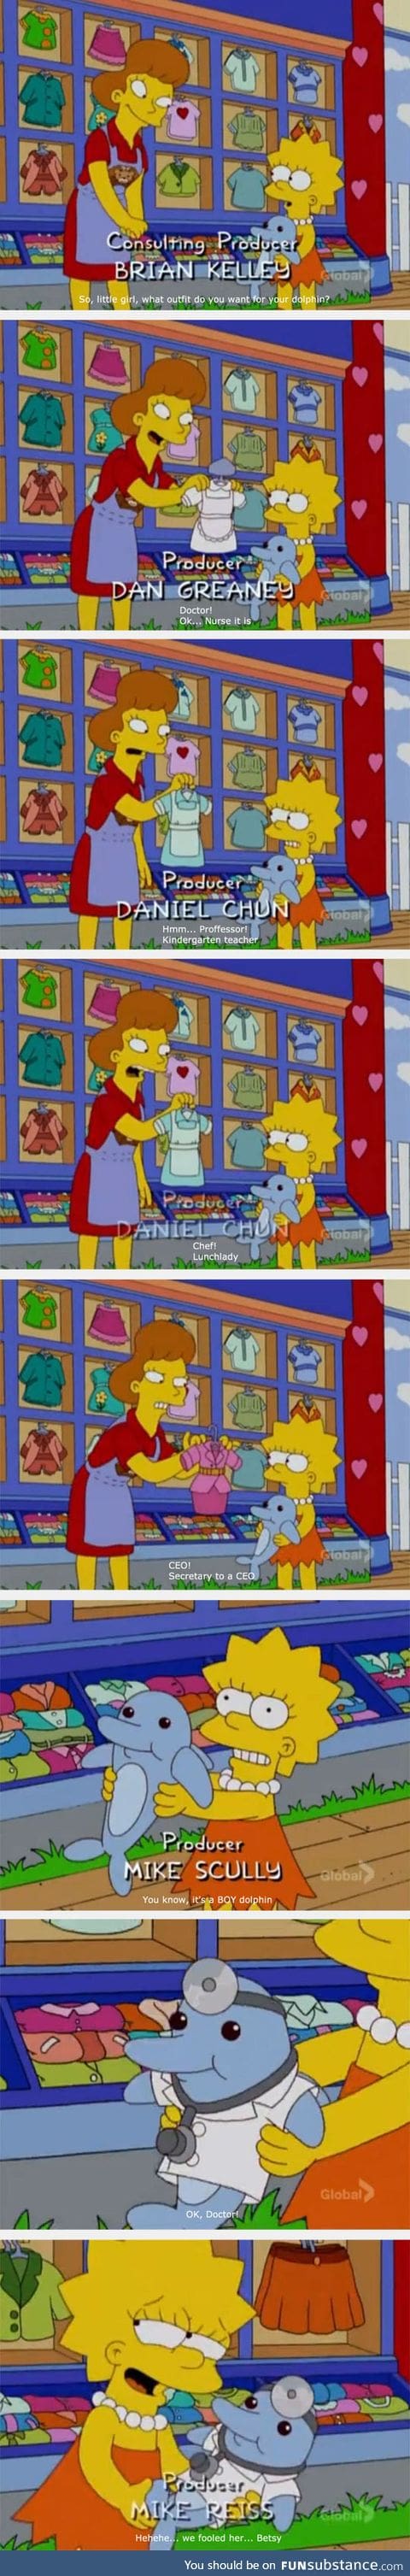 Lisa vs. Gender equality